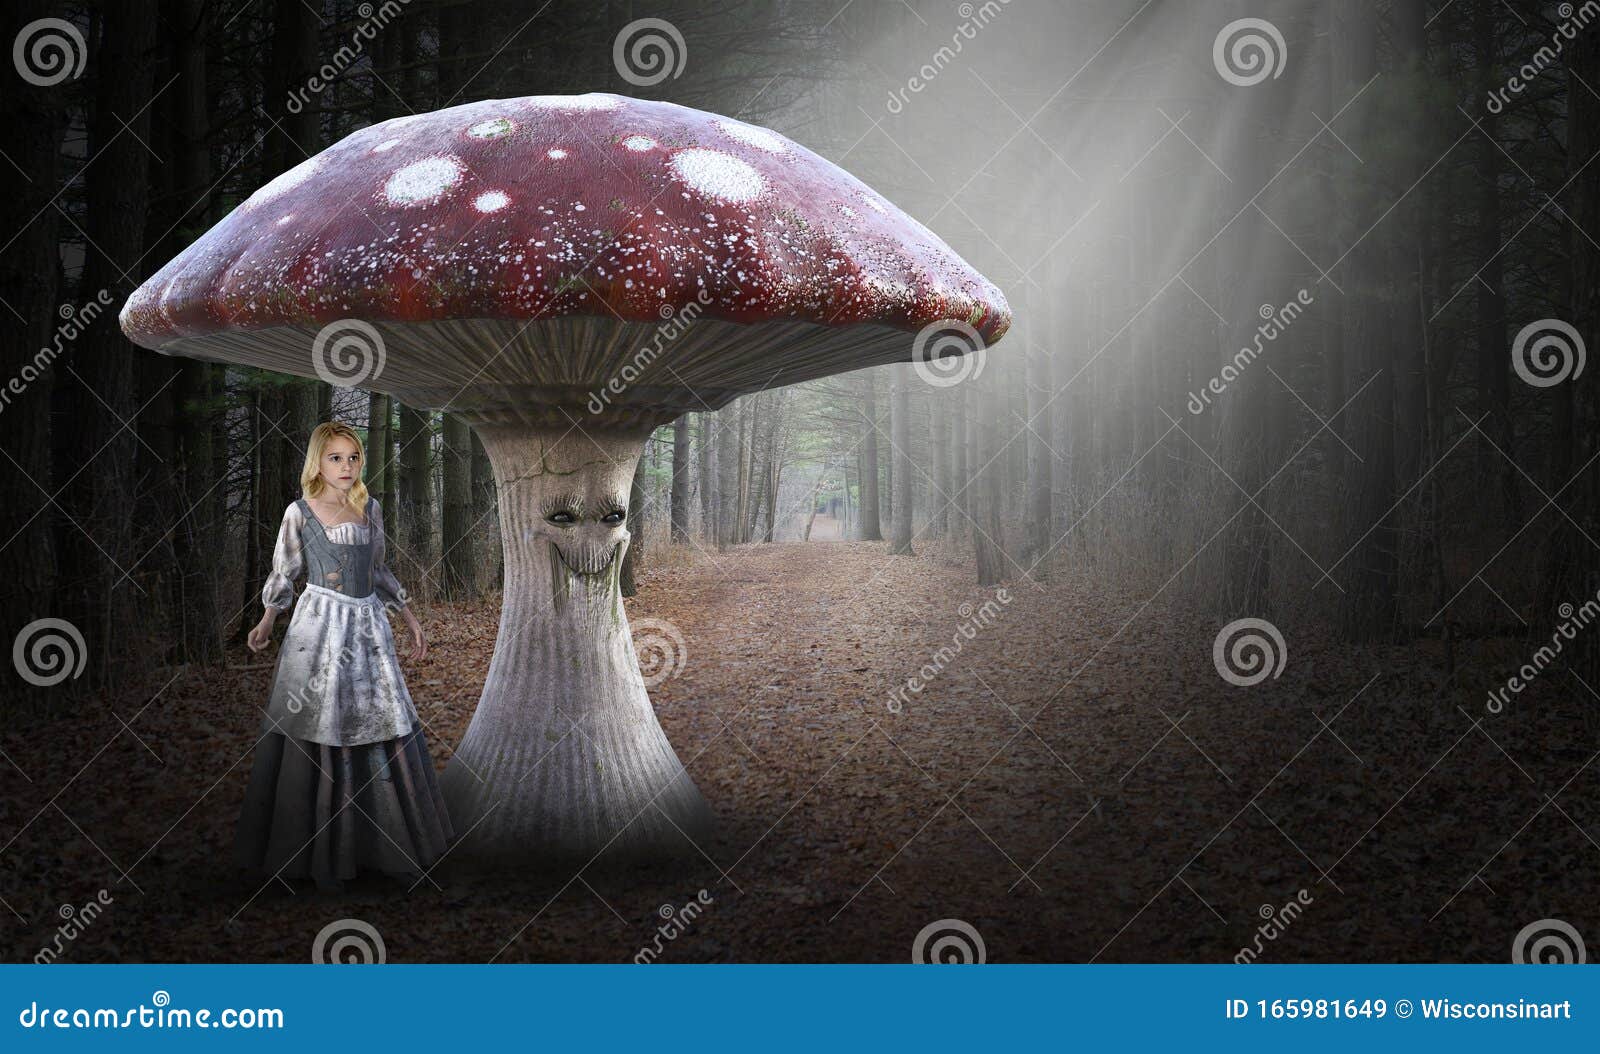 fantasy poor peasant girl, nature, mushroom, woods